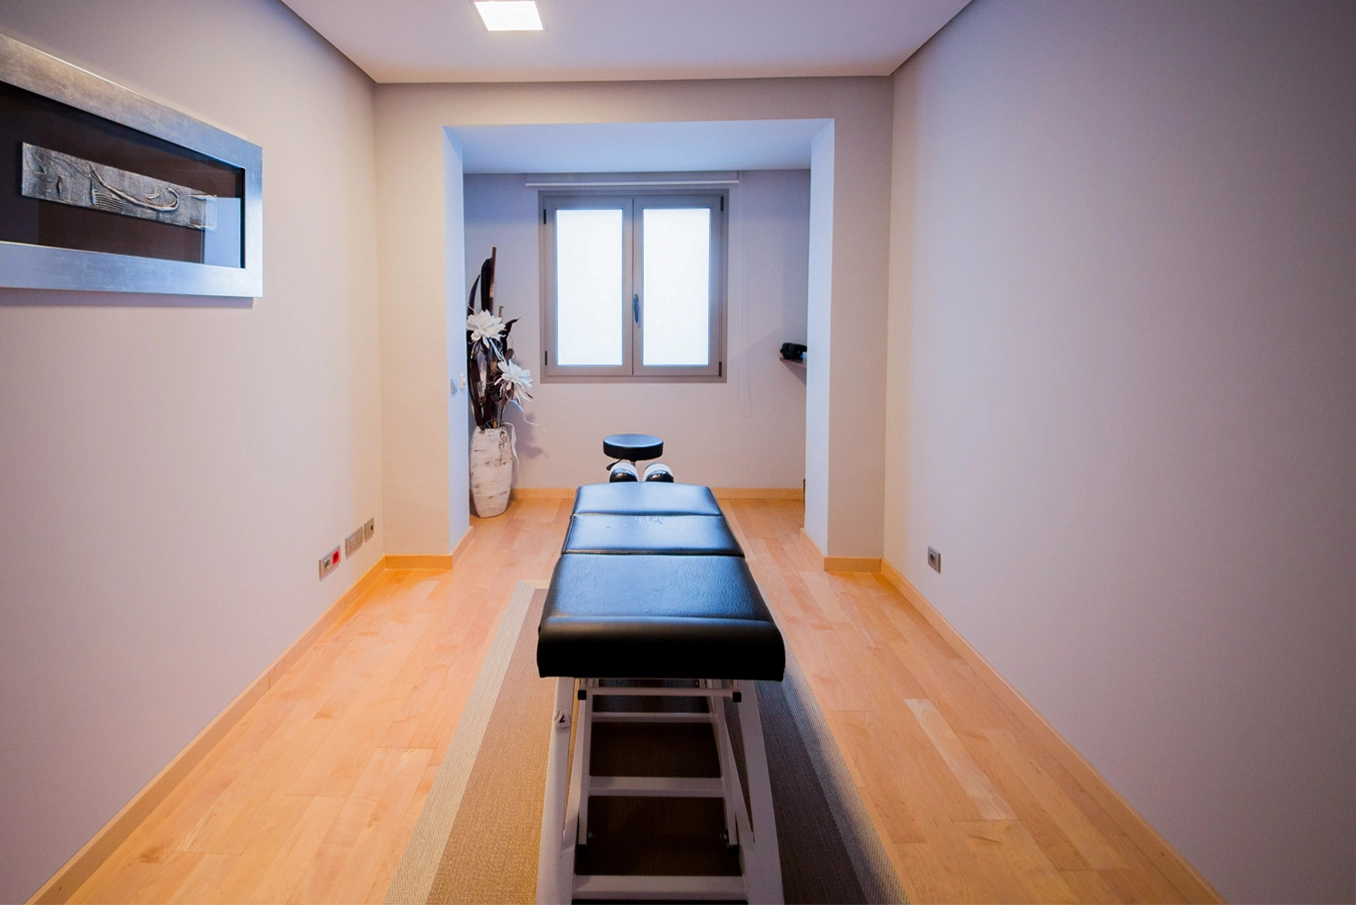 Sala quiropráctica de Centro quiropráctico en Reus, Reus Quiropractic